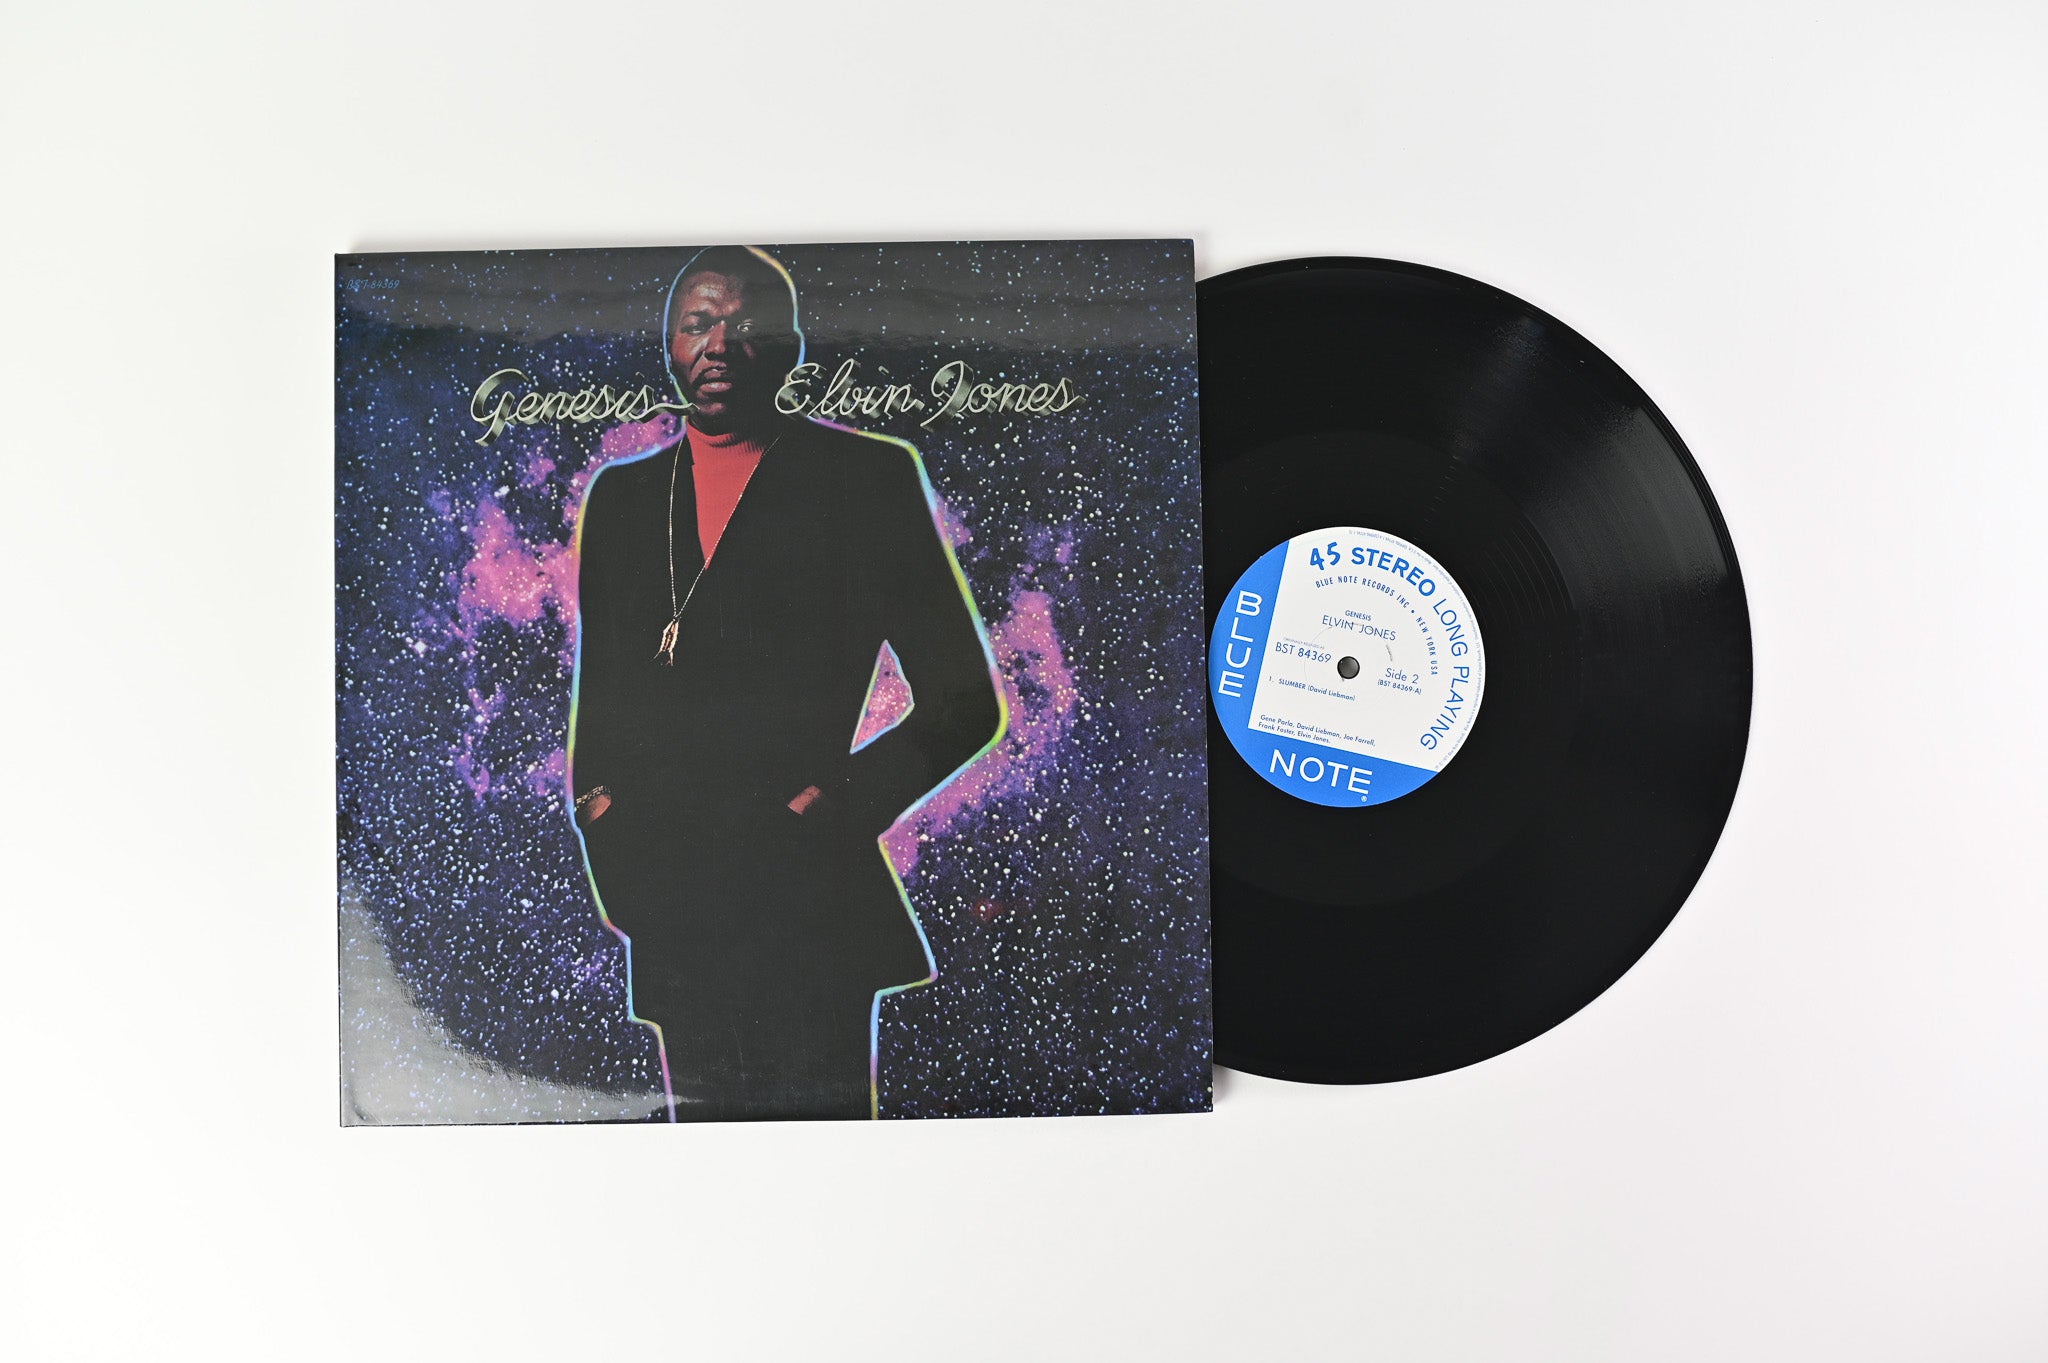 Elvin Jones - Genesis on Blue Note Music Matters Ltd Reissue 45 RPM